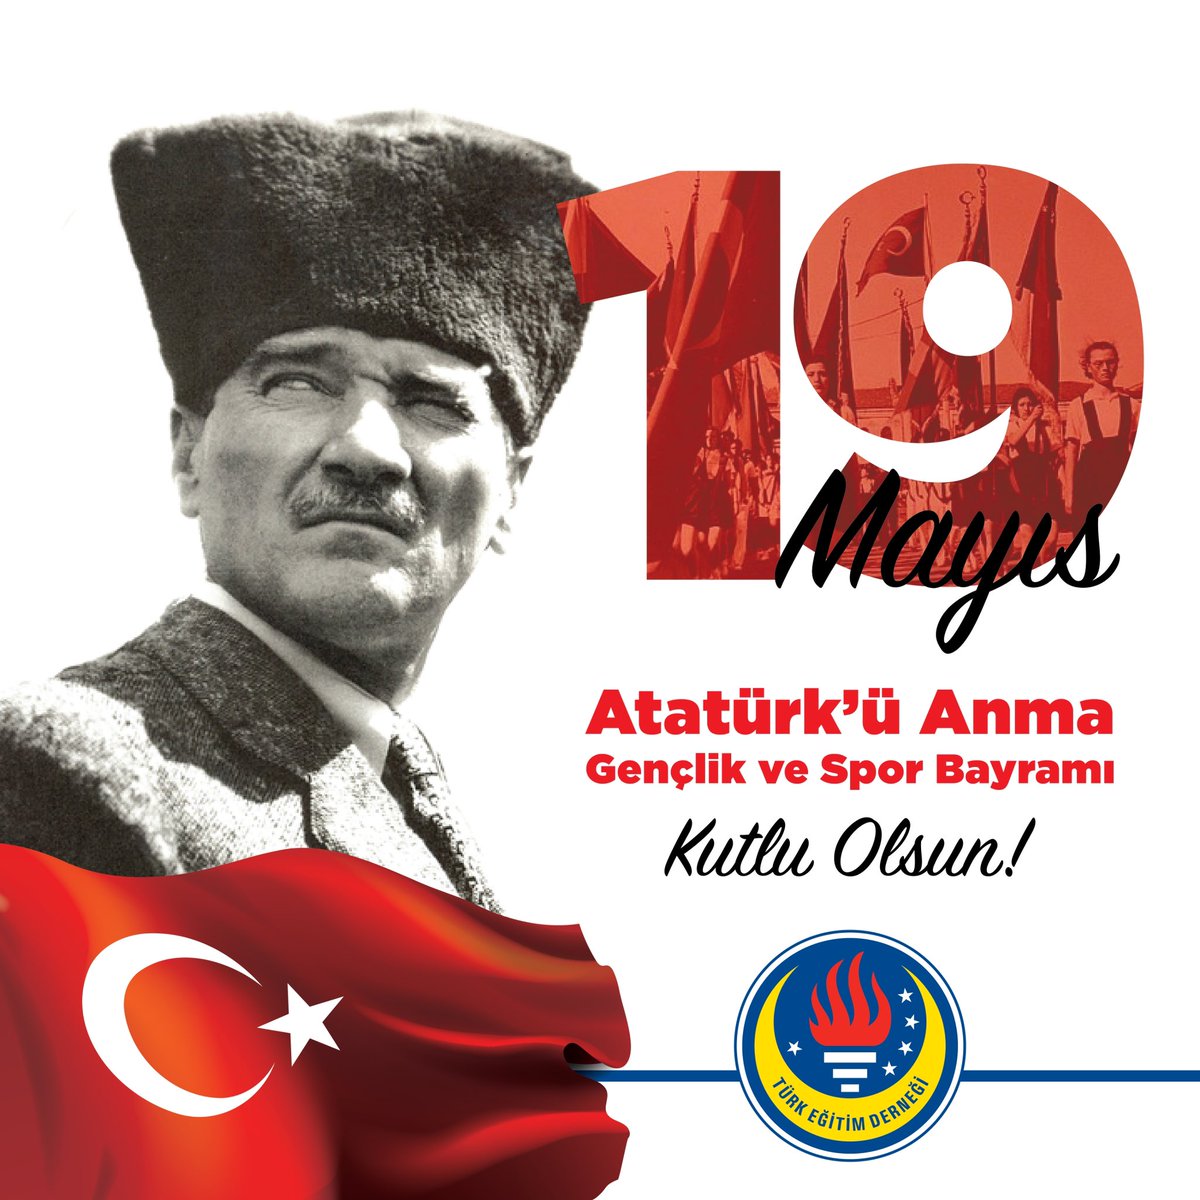 19 Mayıs Atatürk’ü Anma, Gençlik ve Spor Bayramı Kutlu Olsun! #TürkEğitimDerneği #TEDEdirneKoleji